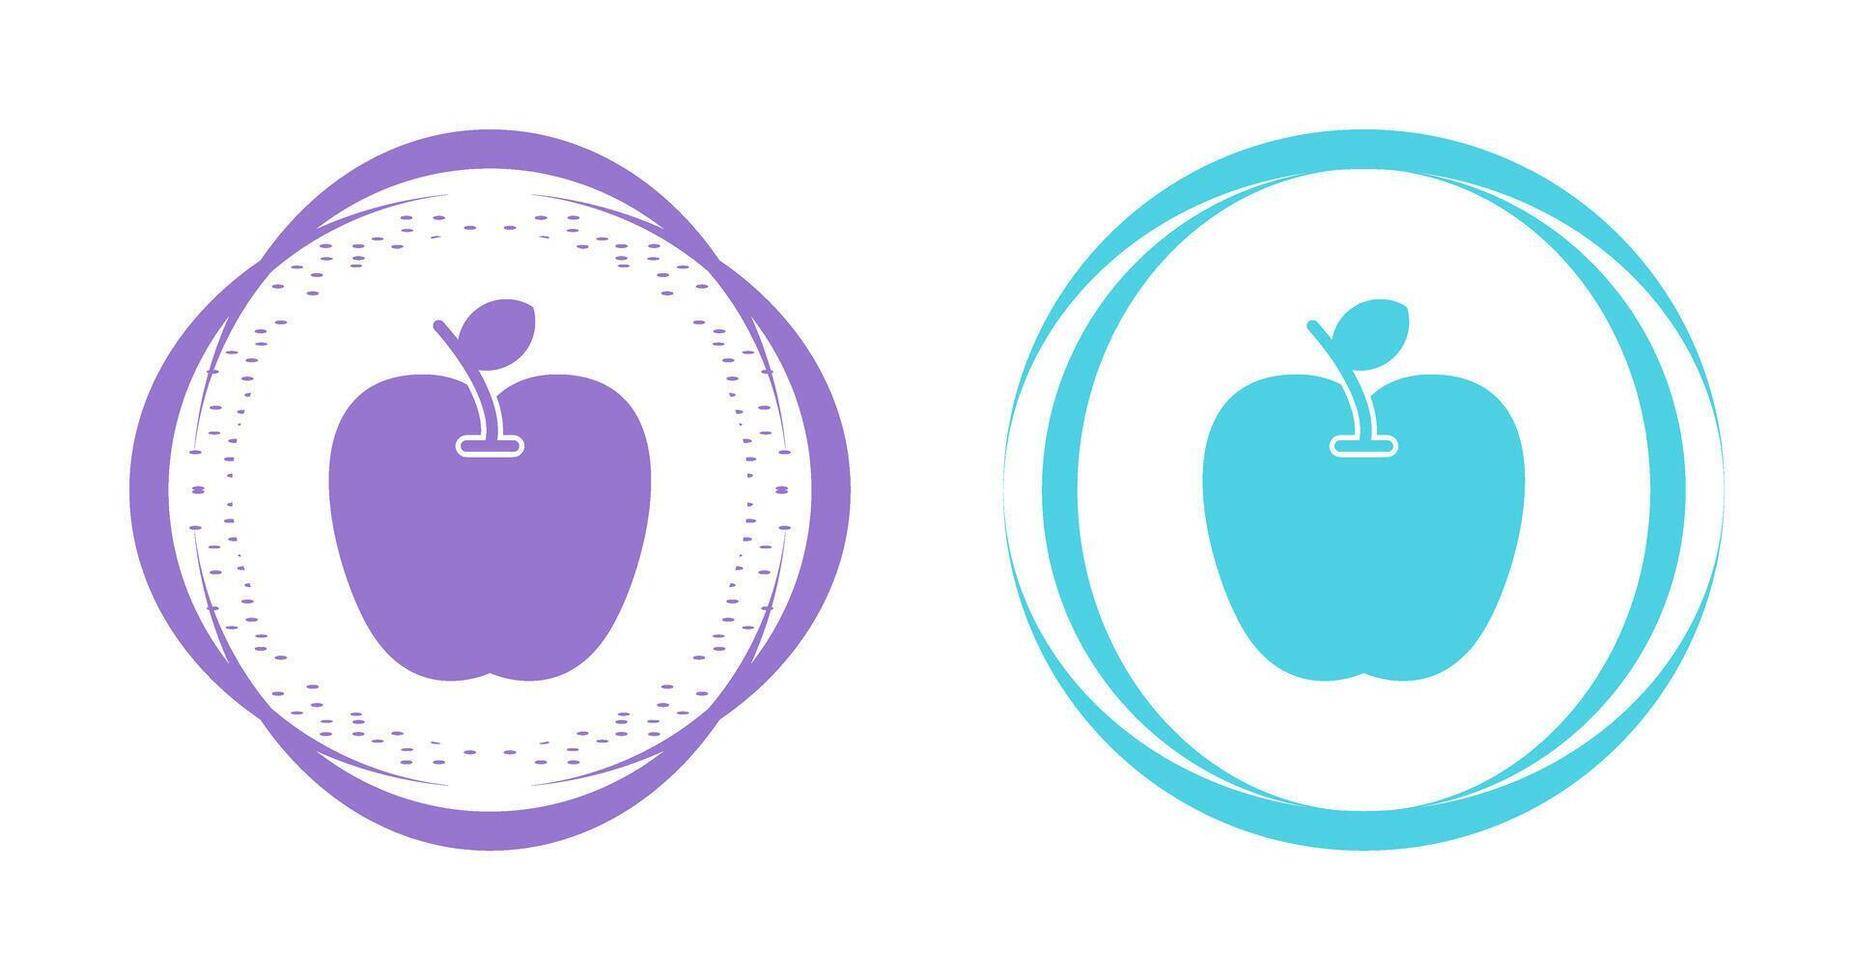 ícone de vetor de maçã